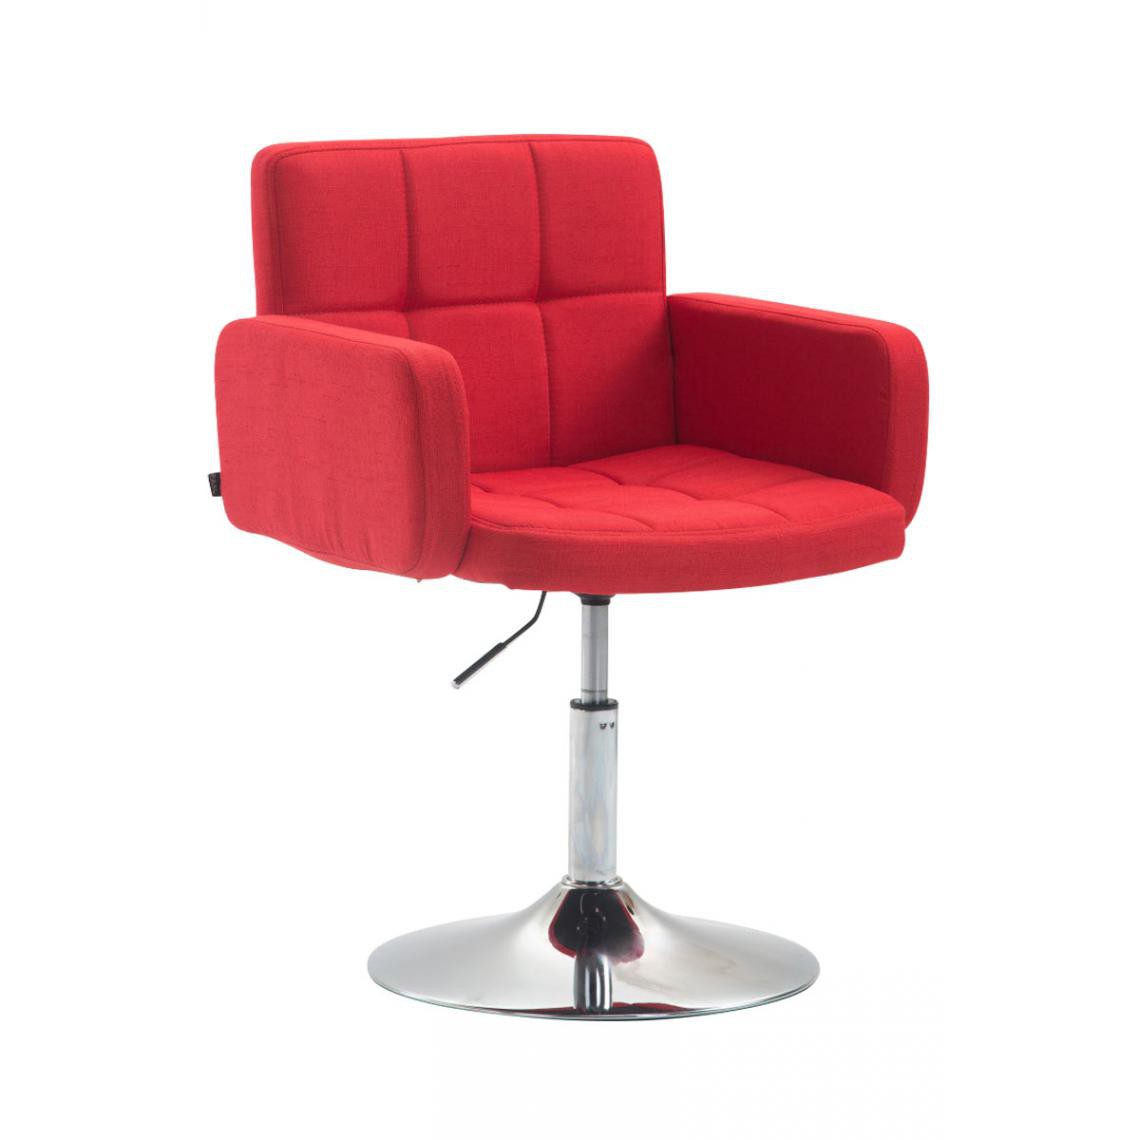 Icaverne - Moderne Tissu pour chaise longue ligne Nouakchott Angeles couleur rouge - Transats, chaises longues